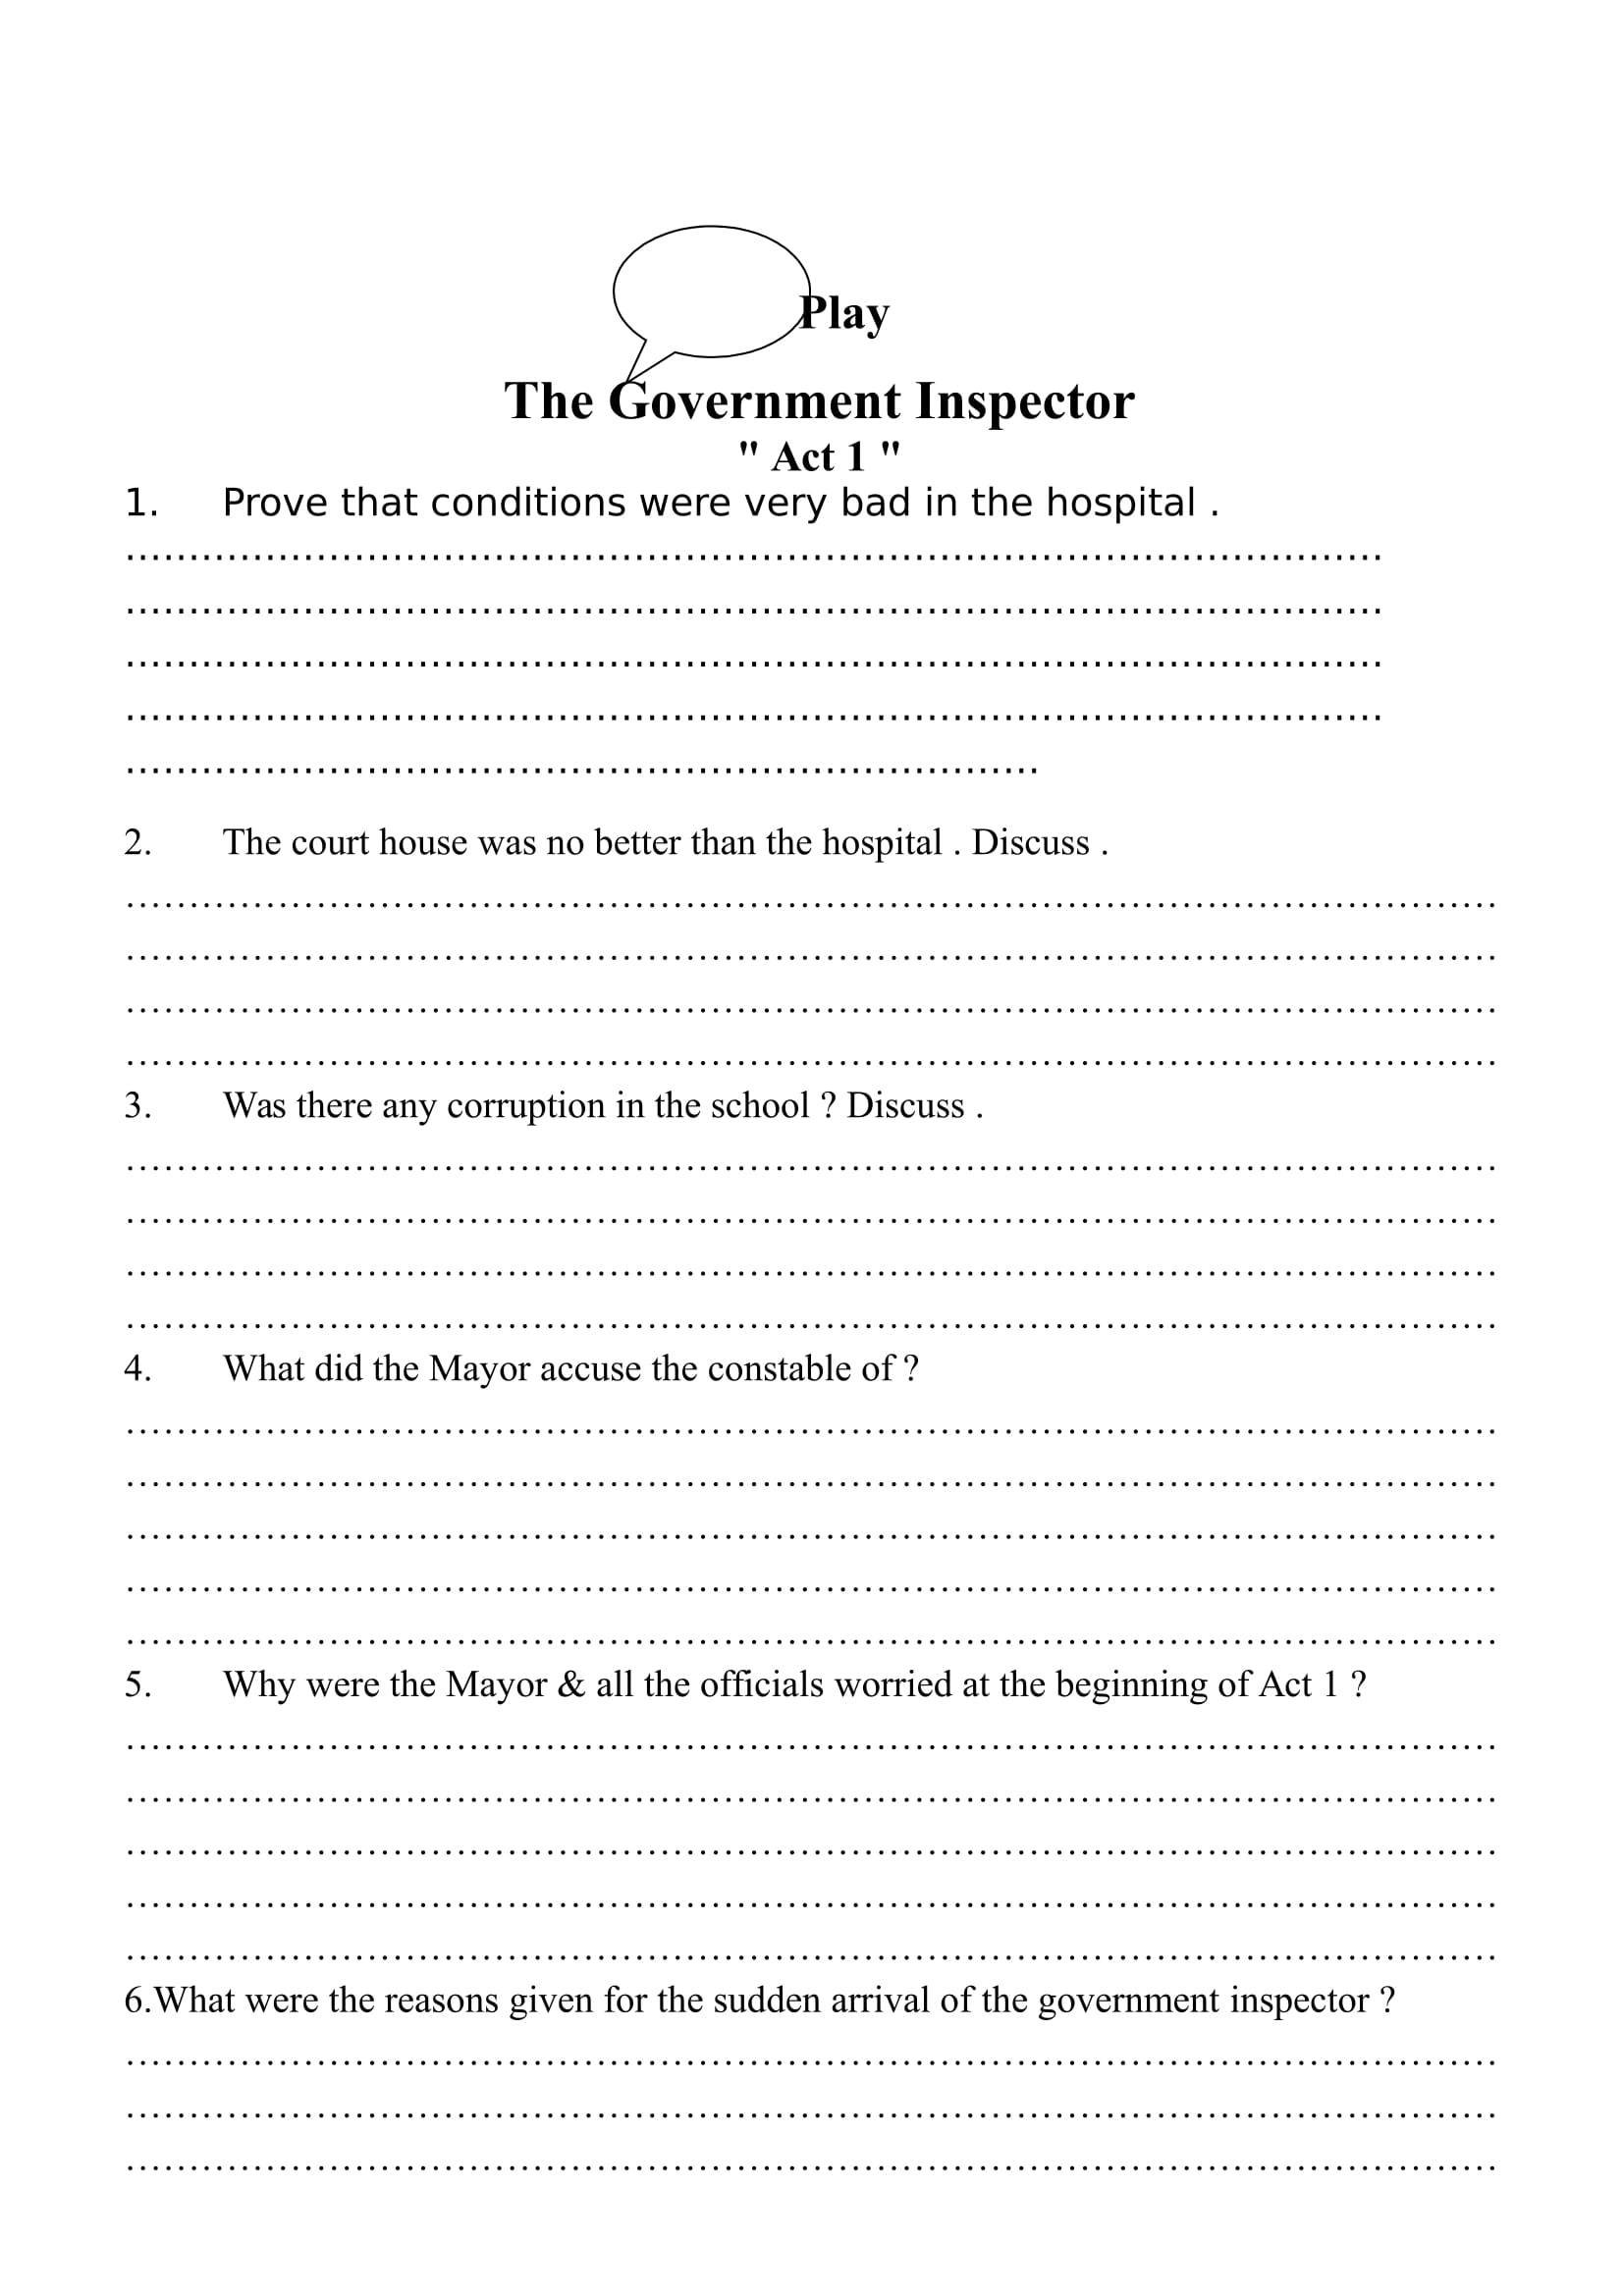 اسئلة على مسرحية government inspector فى اللغة الانجليزية (مستوى رفيع ) للصف الاول الثانوى اللغات